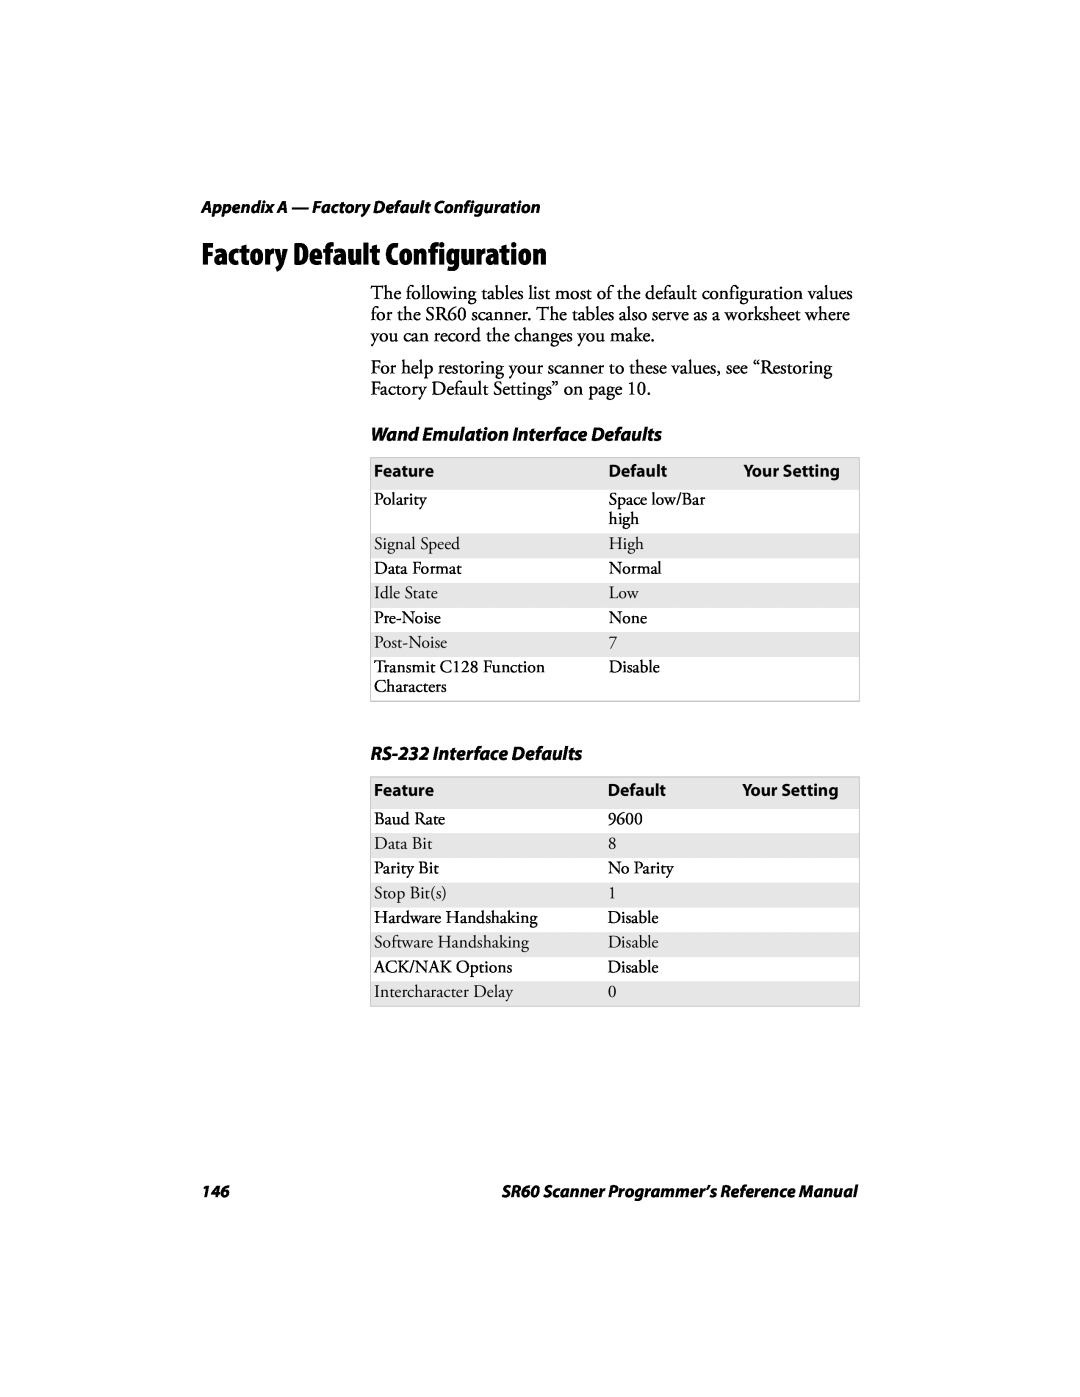 Intermec SR60 manual Factory Default Configuration, Wand Emulation Interface Defaults, RS-232 Interface Defaults 